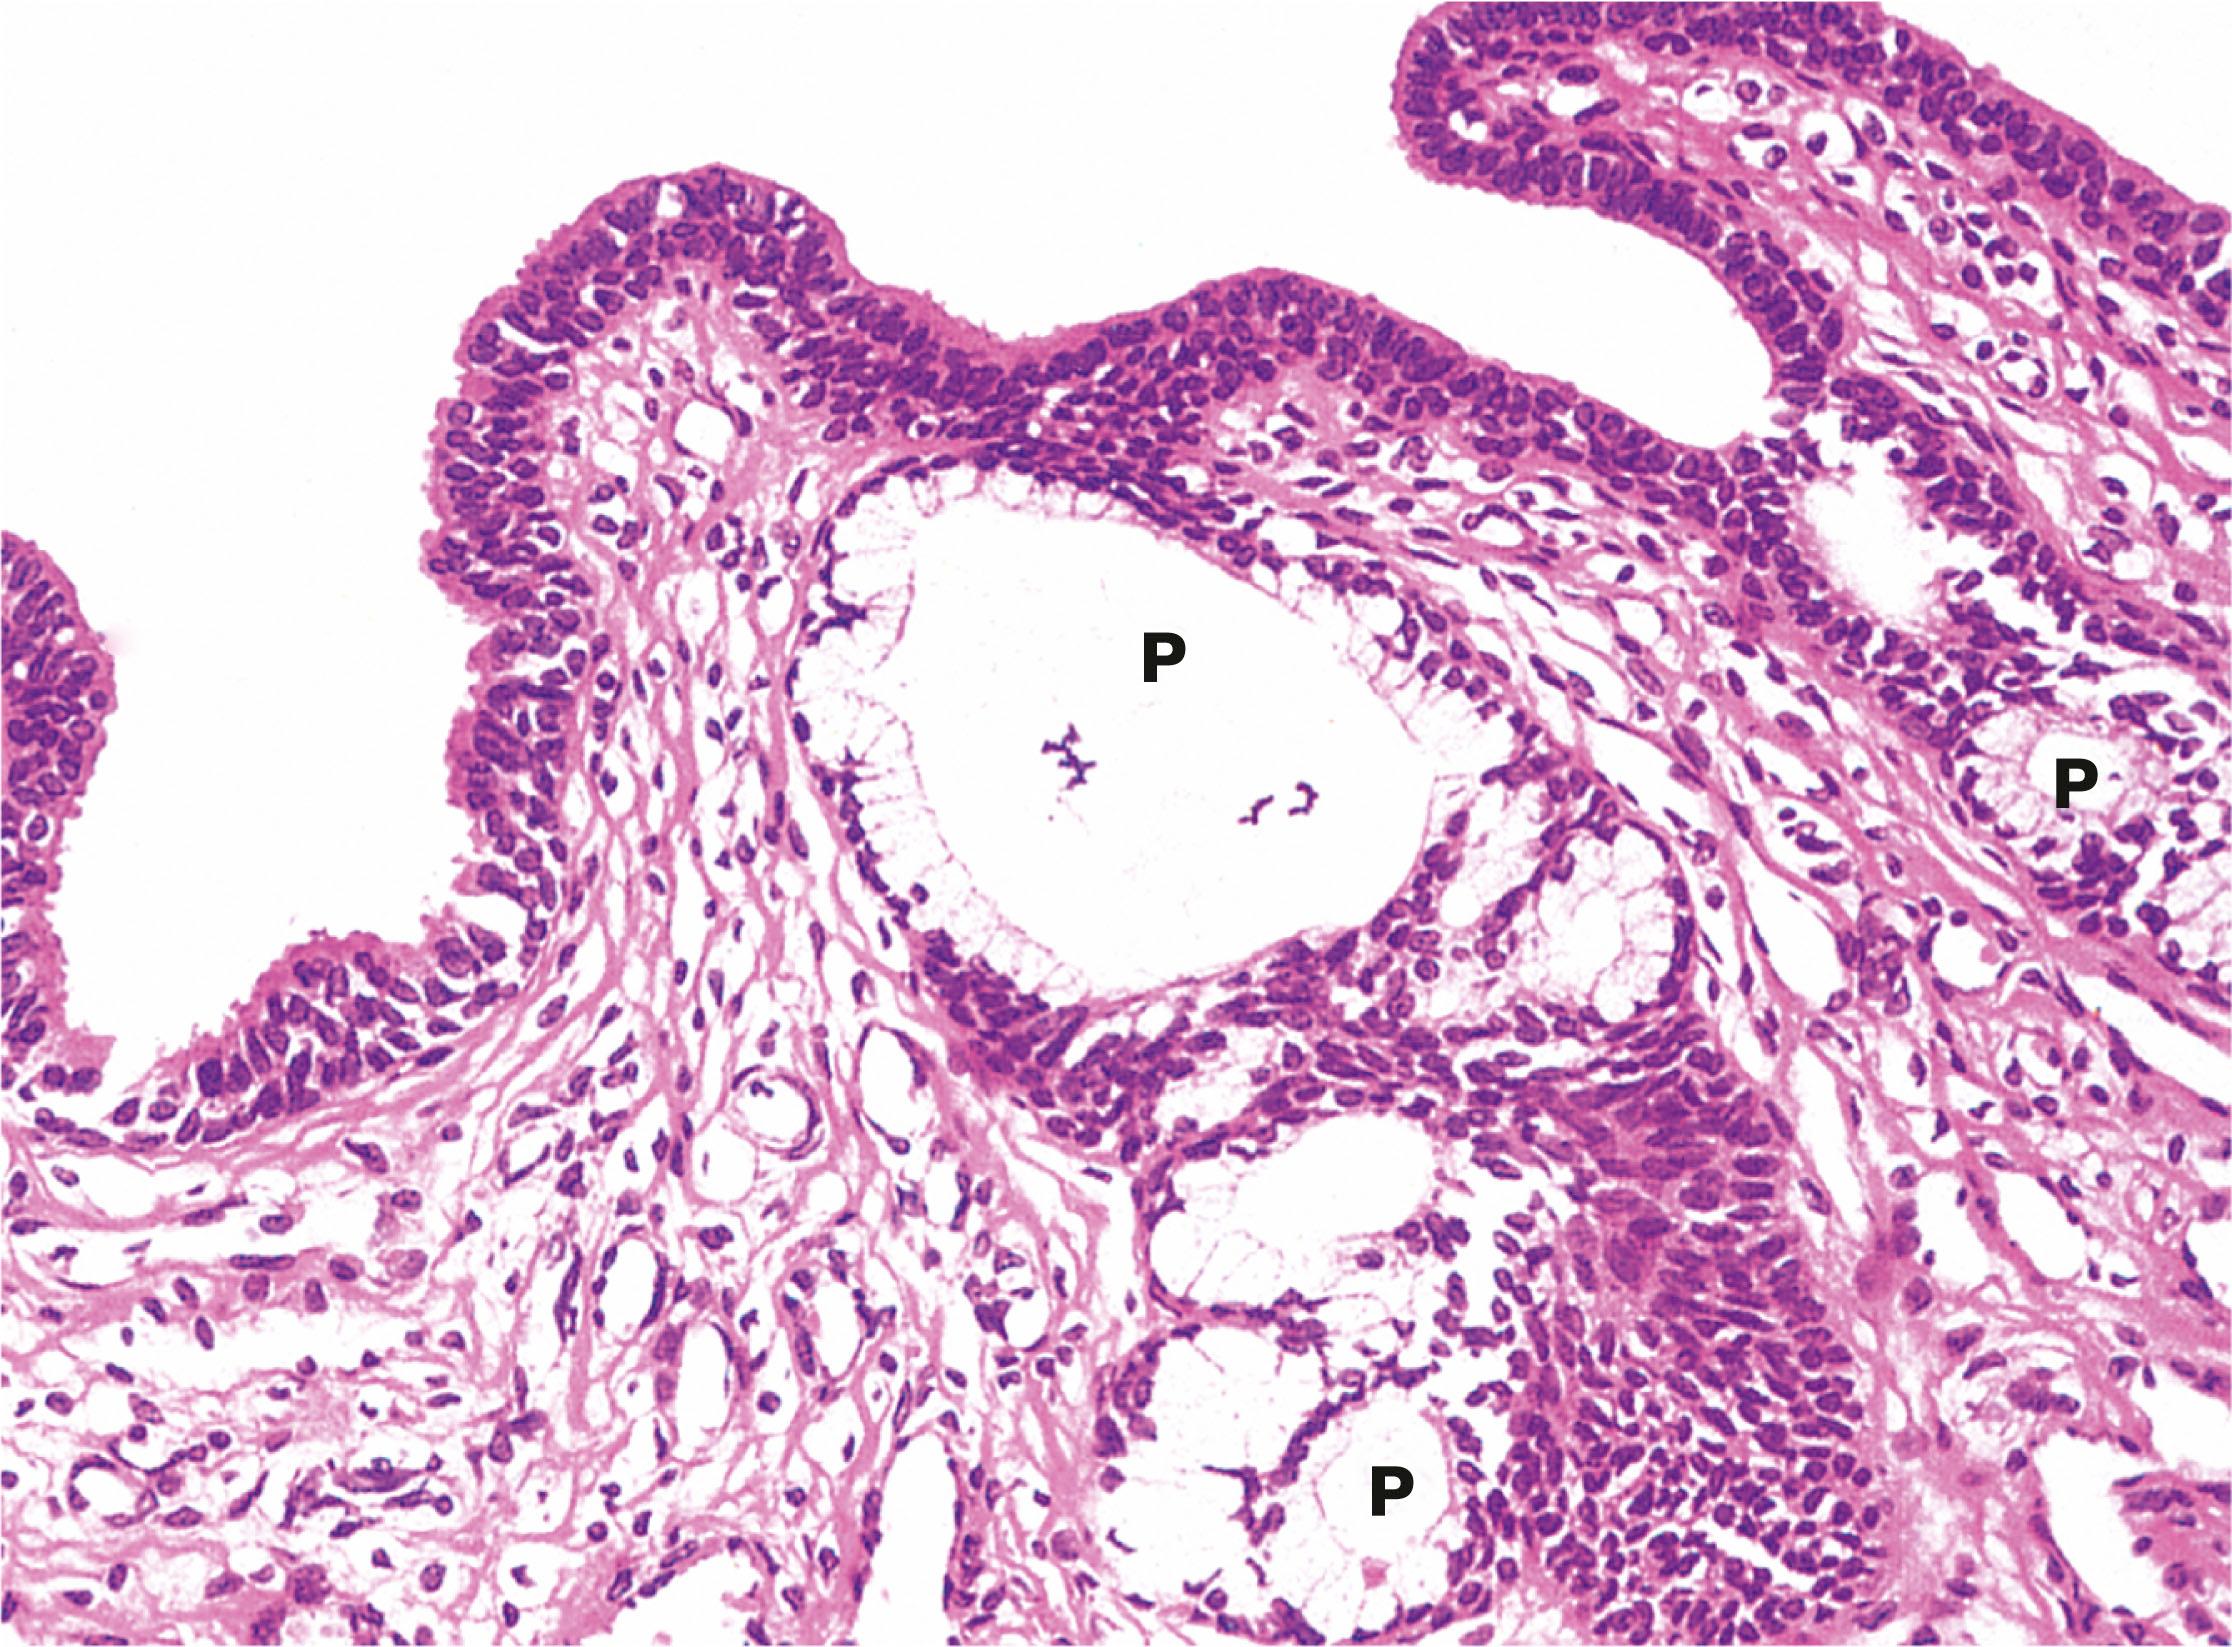 Fig. 18.23, Penile urethra H&E (HP)